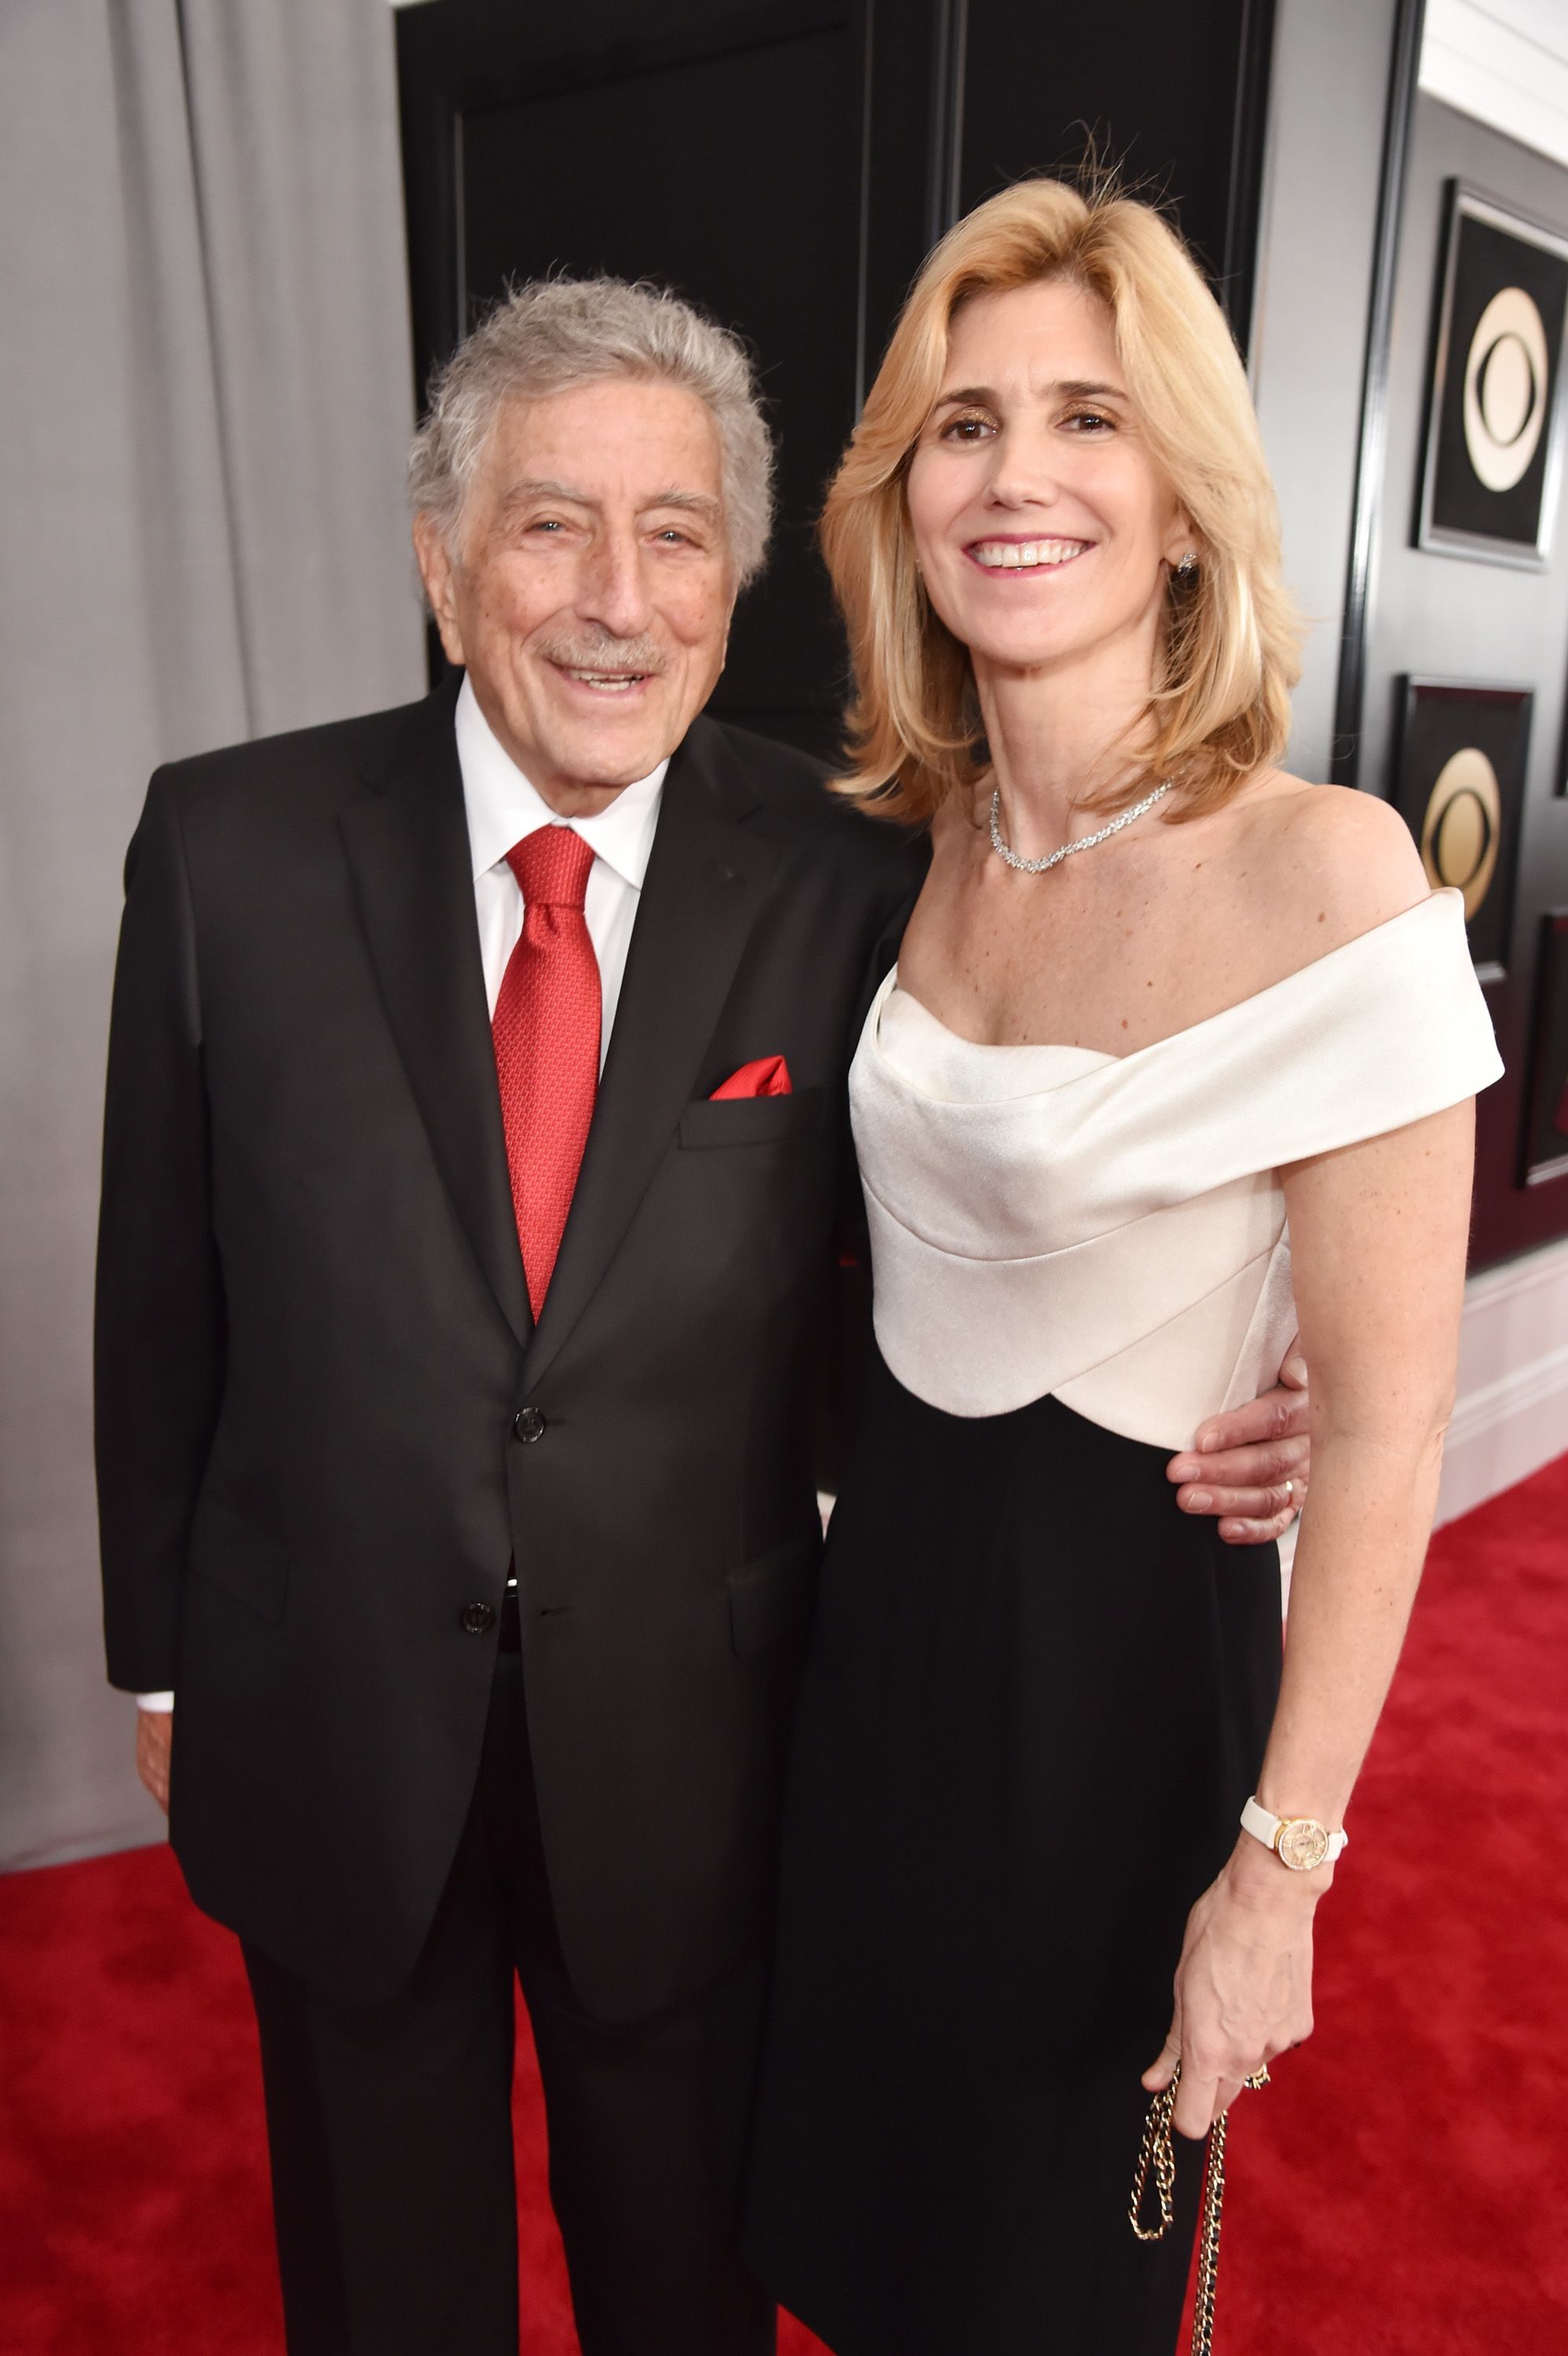 El cantante Tony Bennett y su esposa Susan Crow asisten a la 60 edición de los premios Grammy en el Madison Square Garden el 28 de enero de 2018 en Nueva York. | Foto: Getty Images